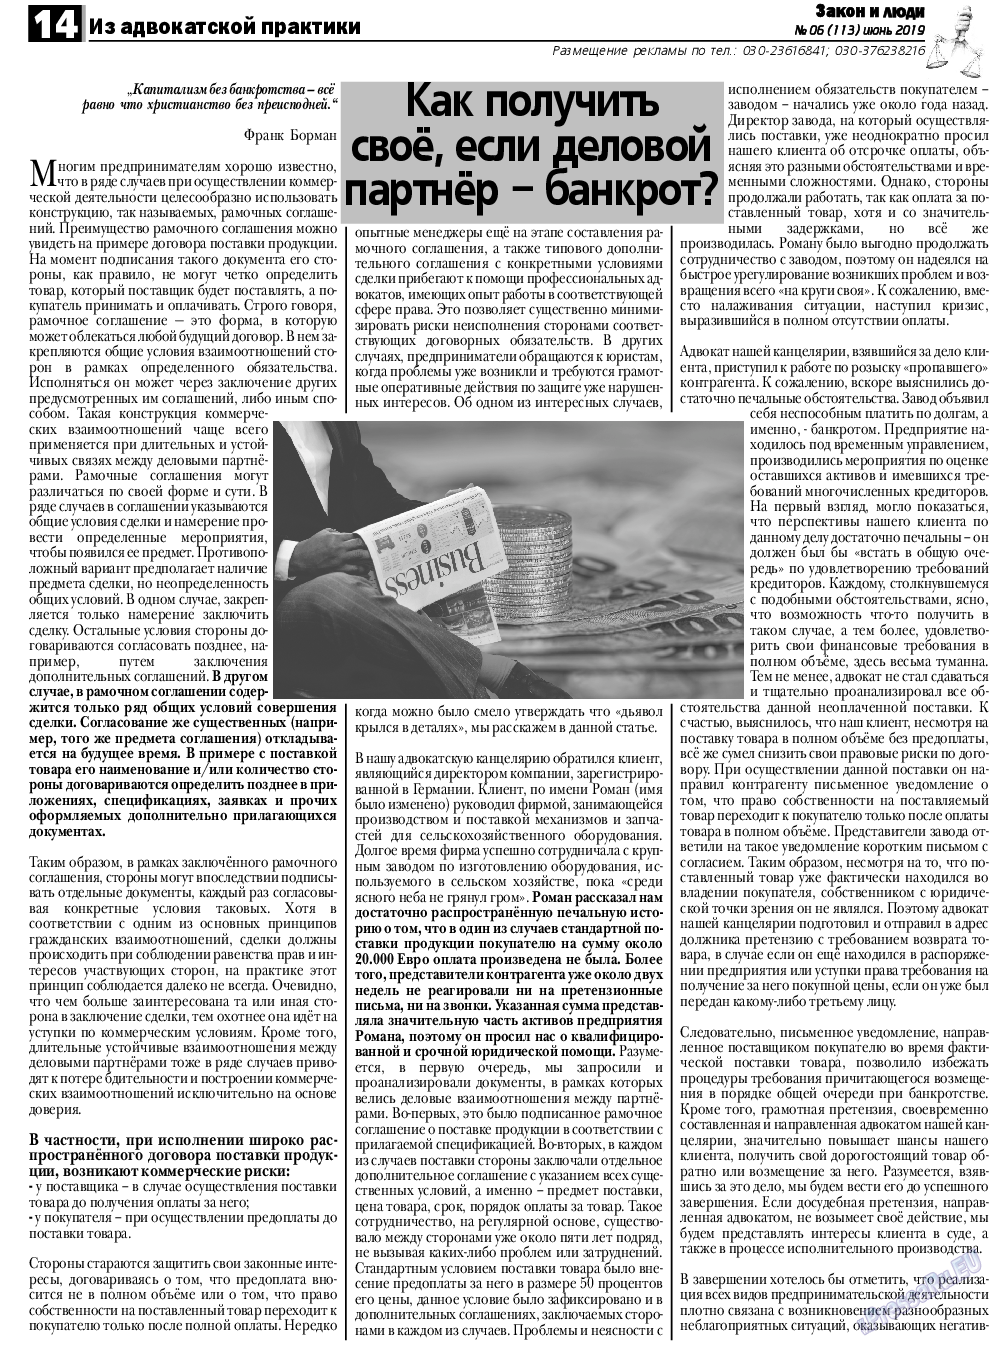 Закон и люди, газета. 2019 №6 стр.14